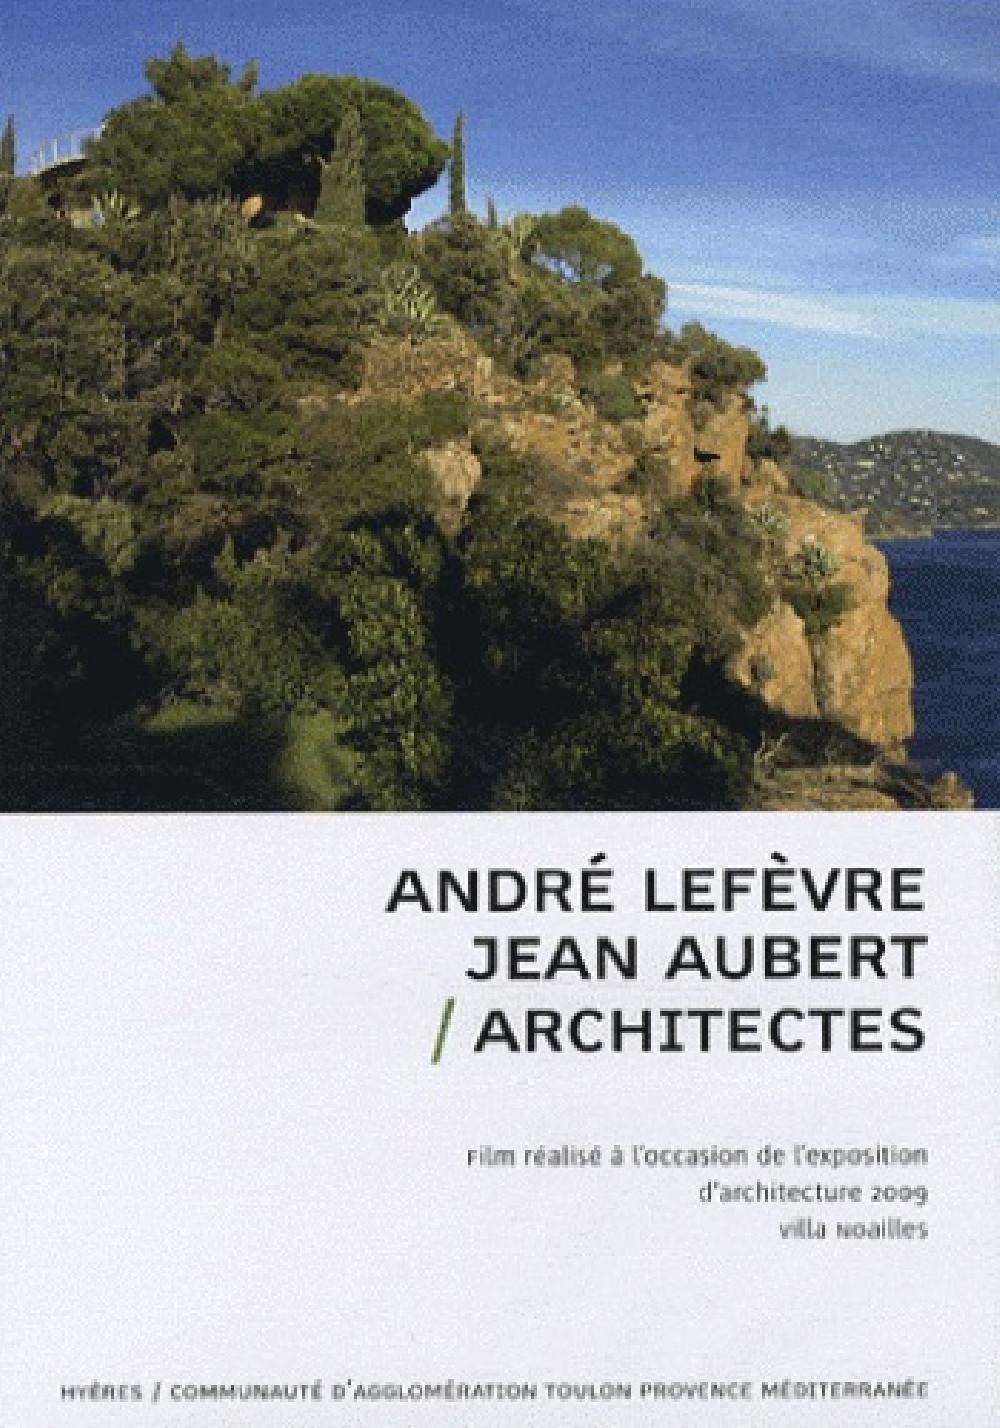 André Lefèvre et Jean Aubert, architectes - DVD Vidéo 